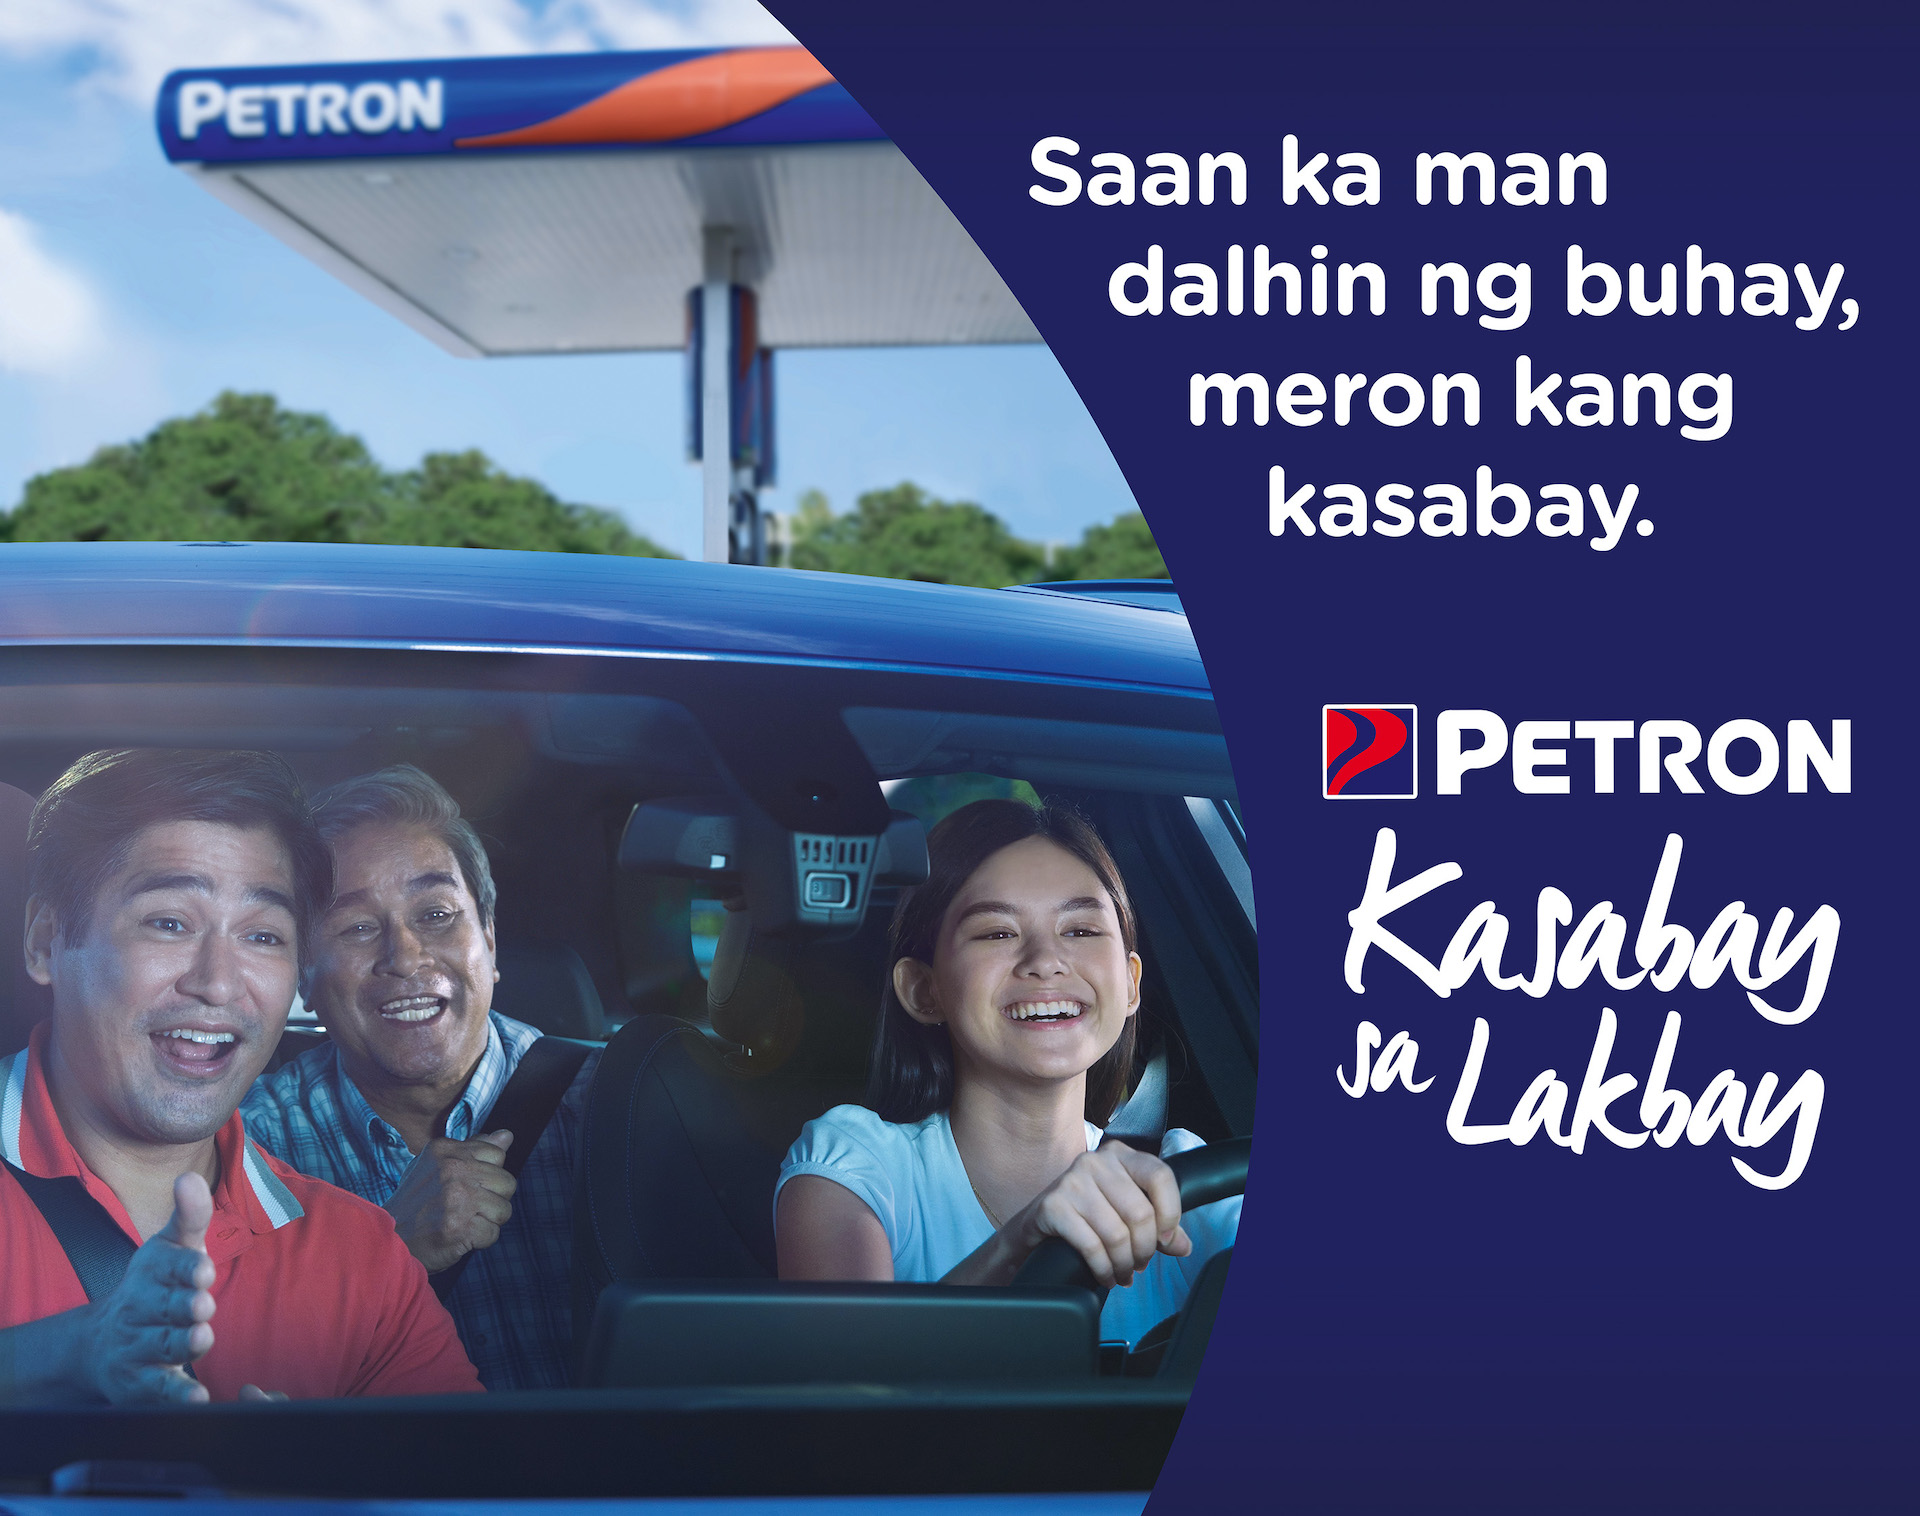 Petron’s Kasabay sa Lakbay gives a nostalgic look of the company’s service to Filipino motorists